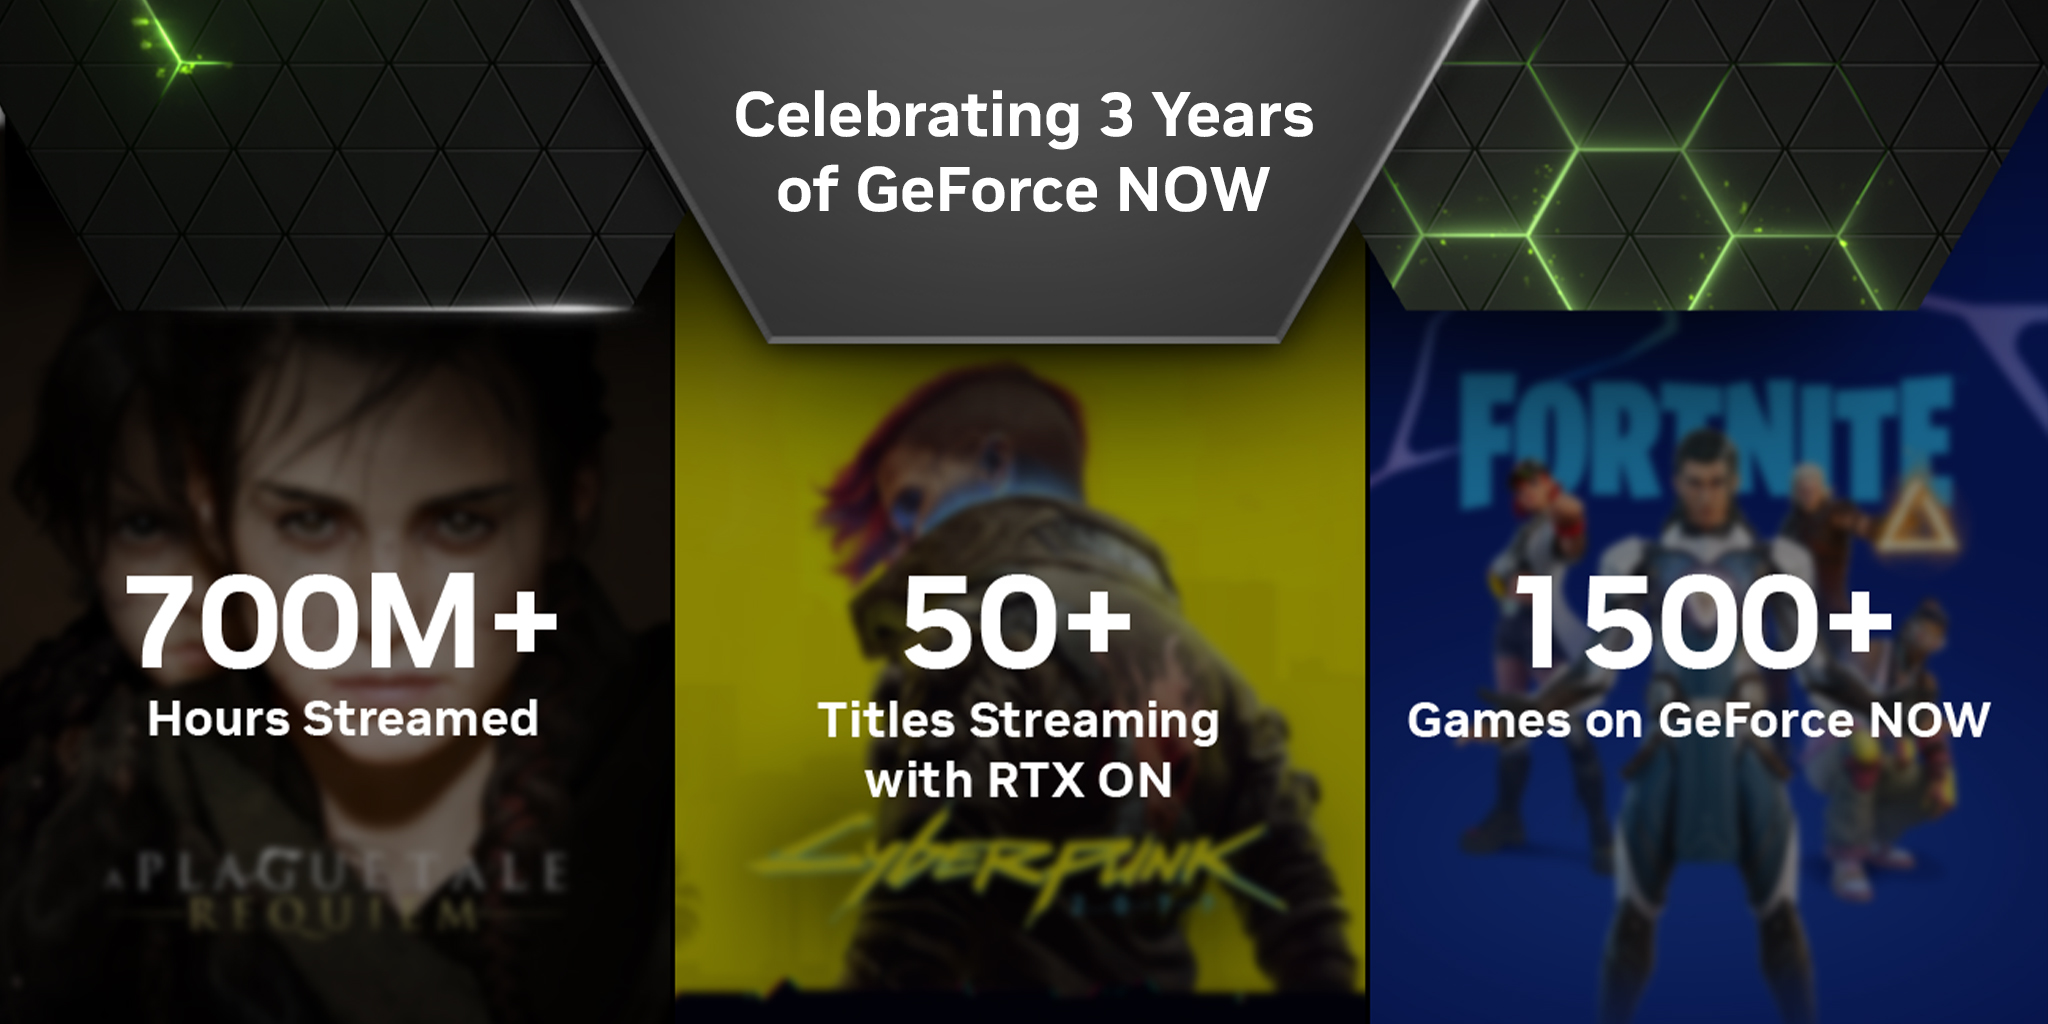 NVIDIA festeggia il terzo anniversario di GeForce NOW con 25 nuovi giochi a febbraio e moltissime novità!